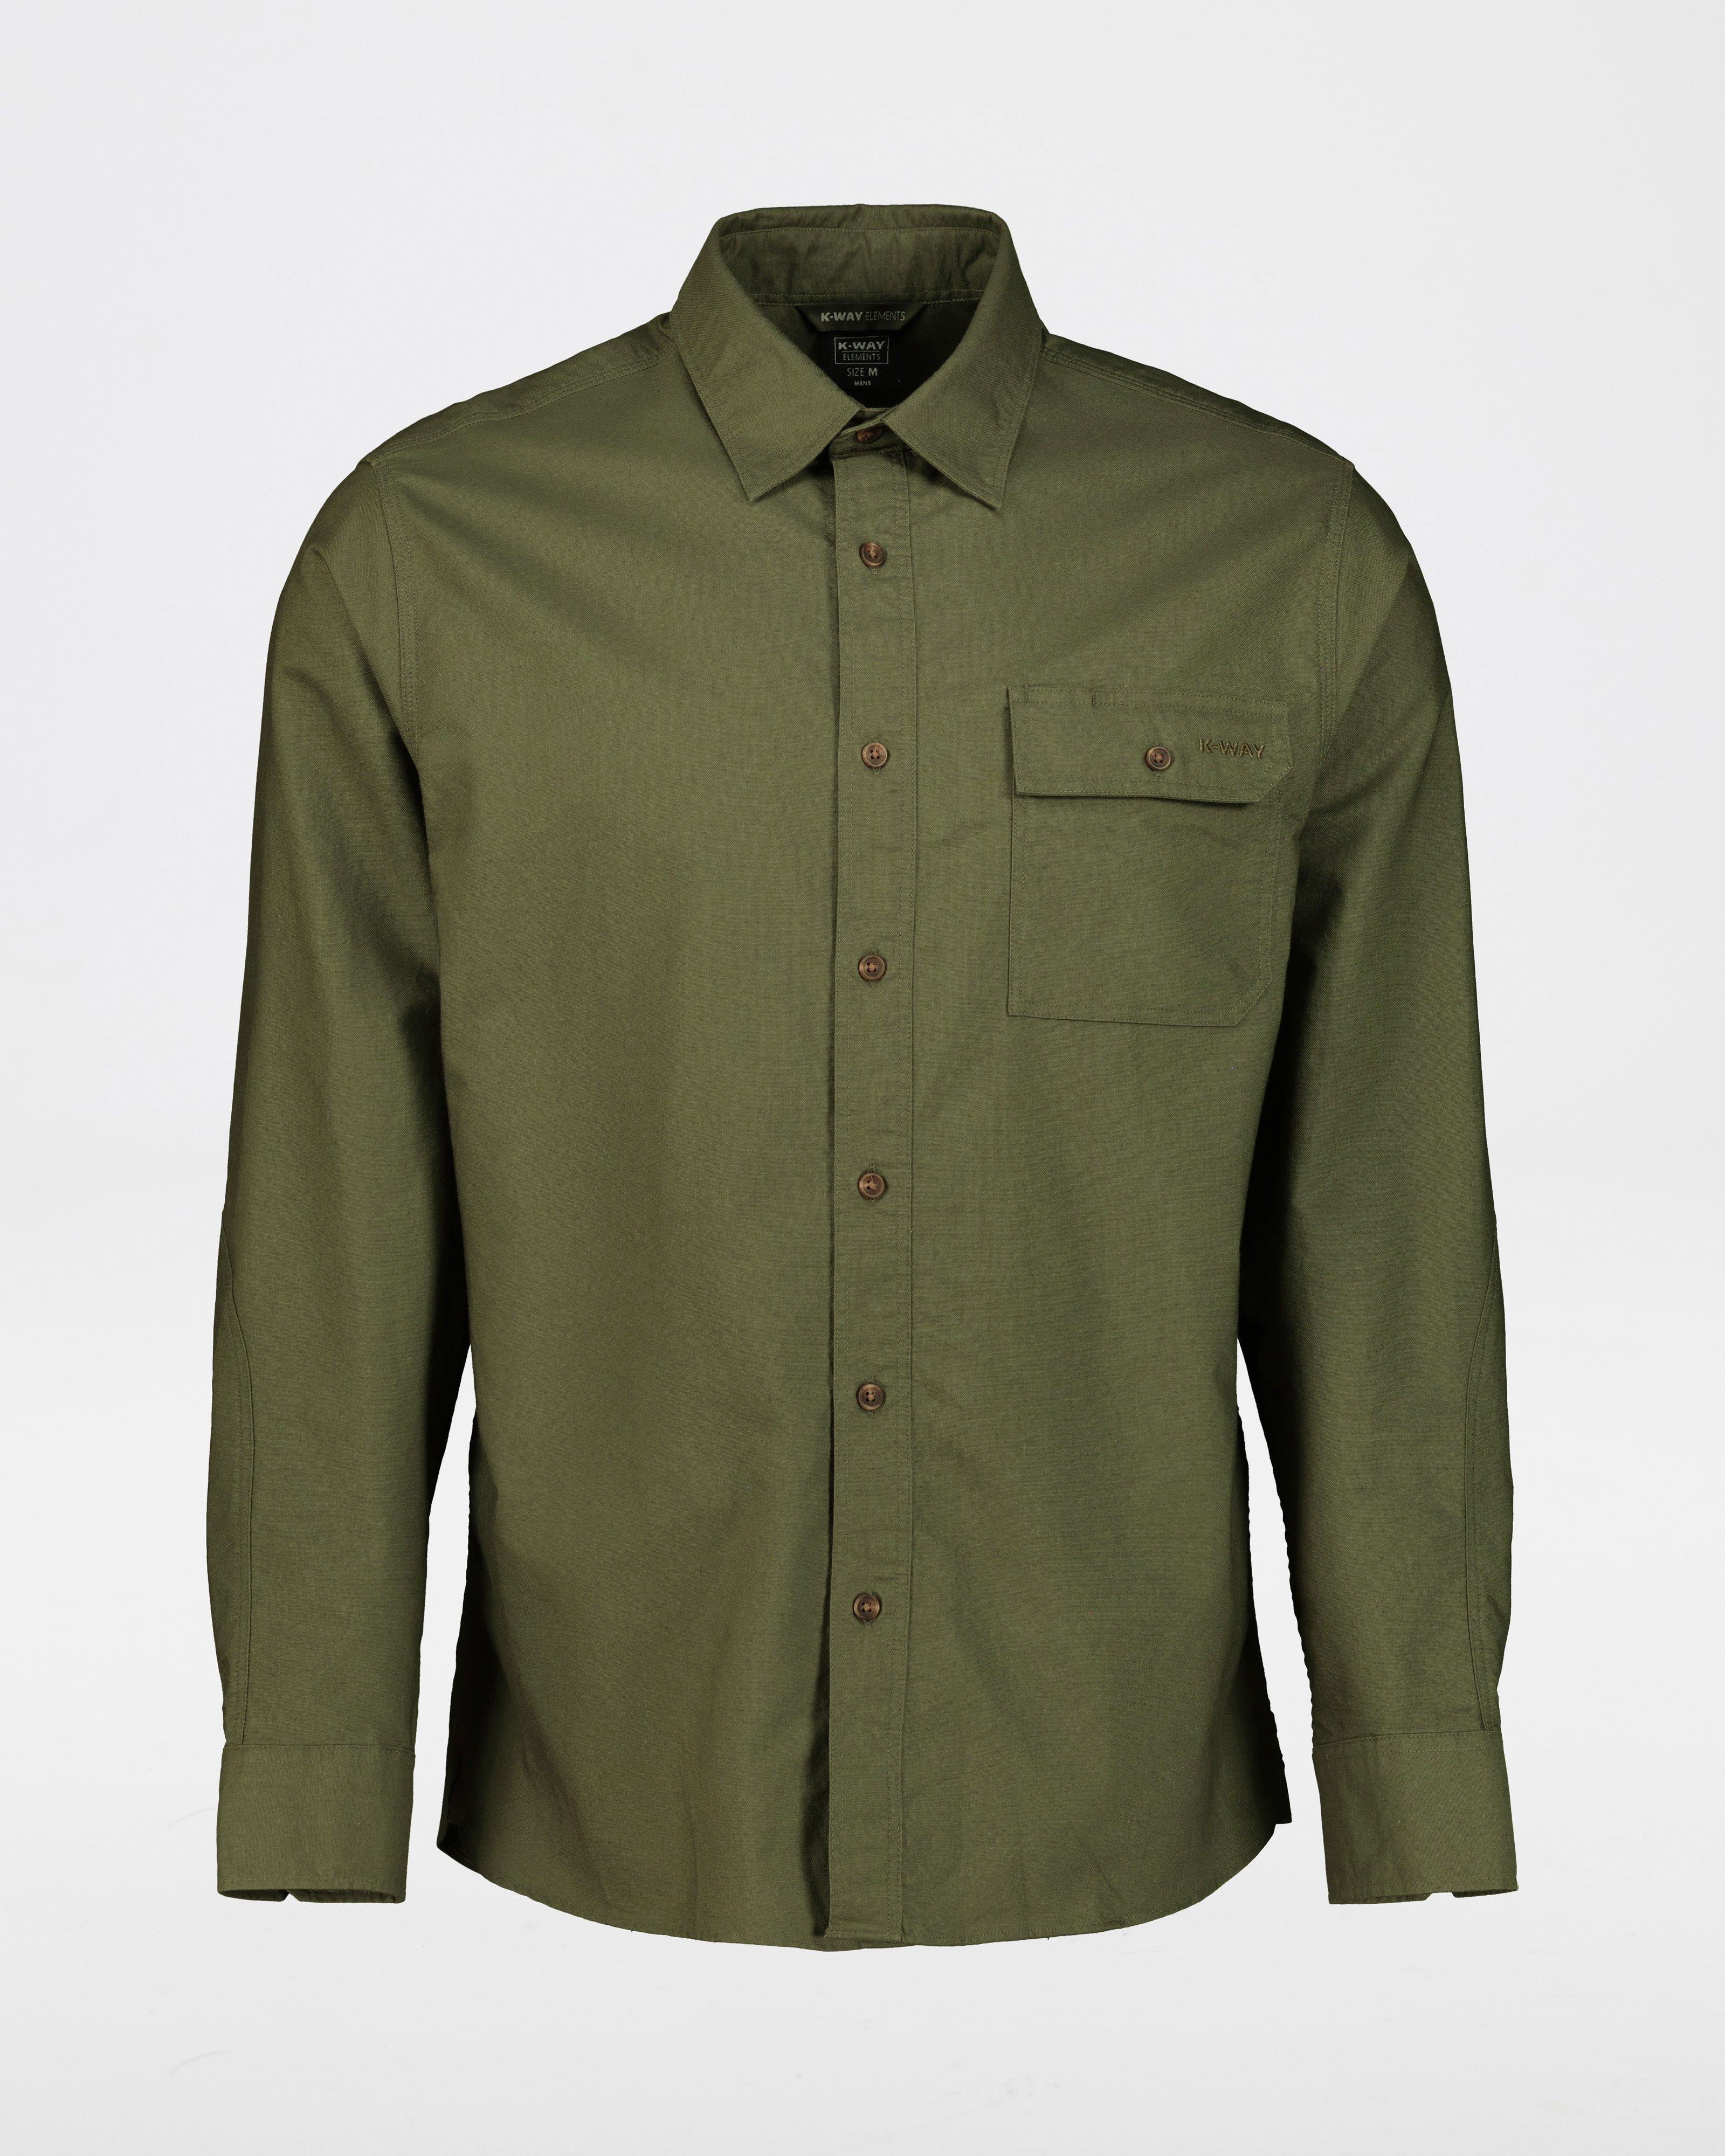 K-Way Elements Men's Casual Work Shirt -  Dark Green/Dark Olive